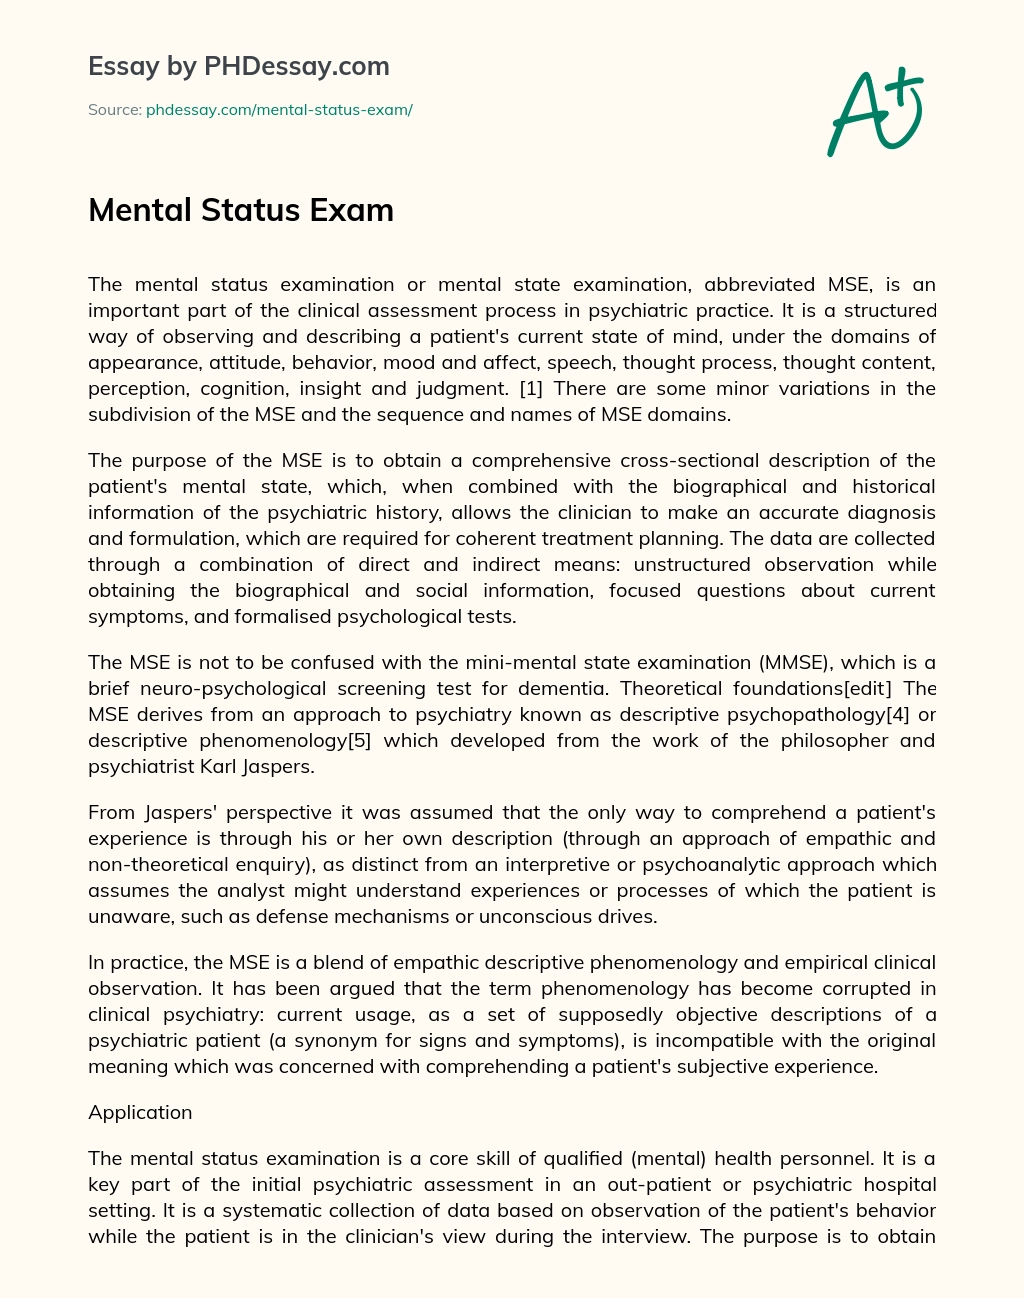 Mental Status Exam essay